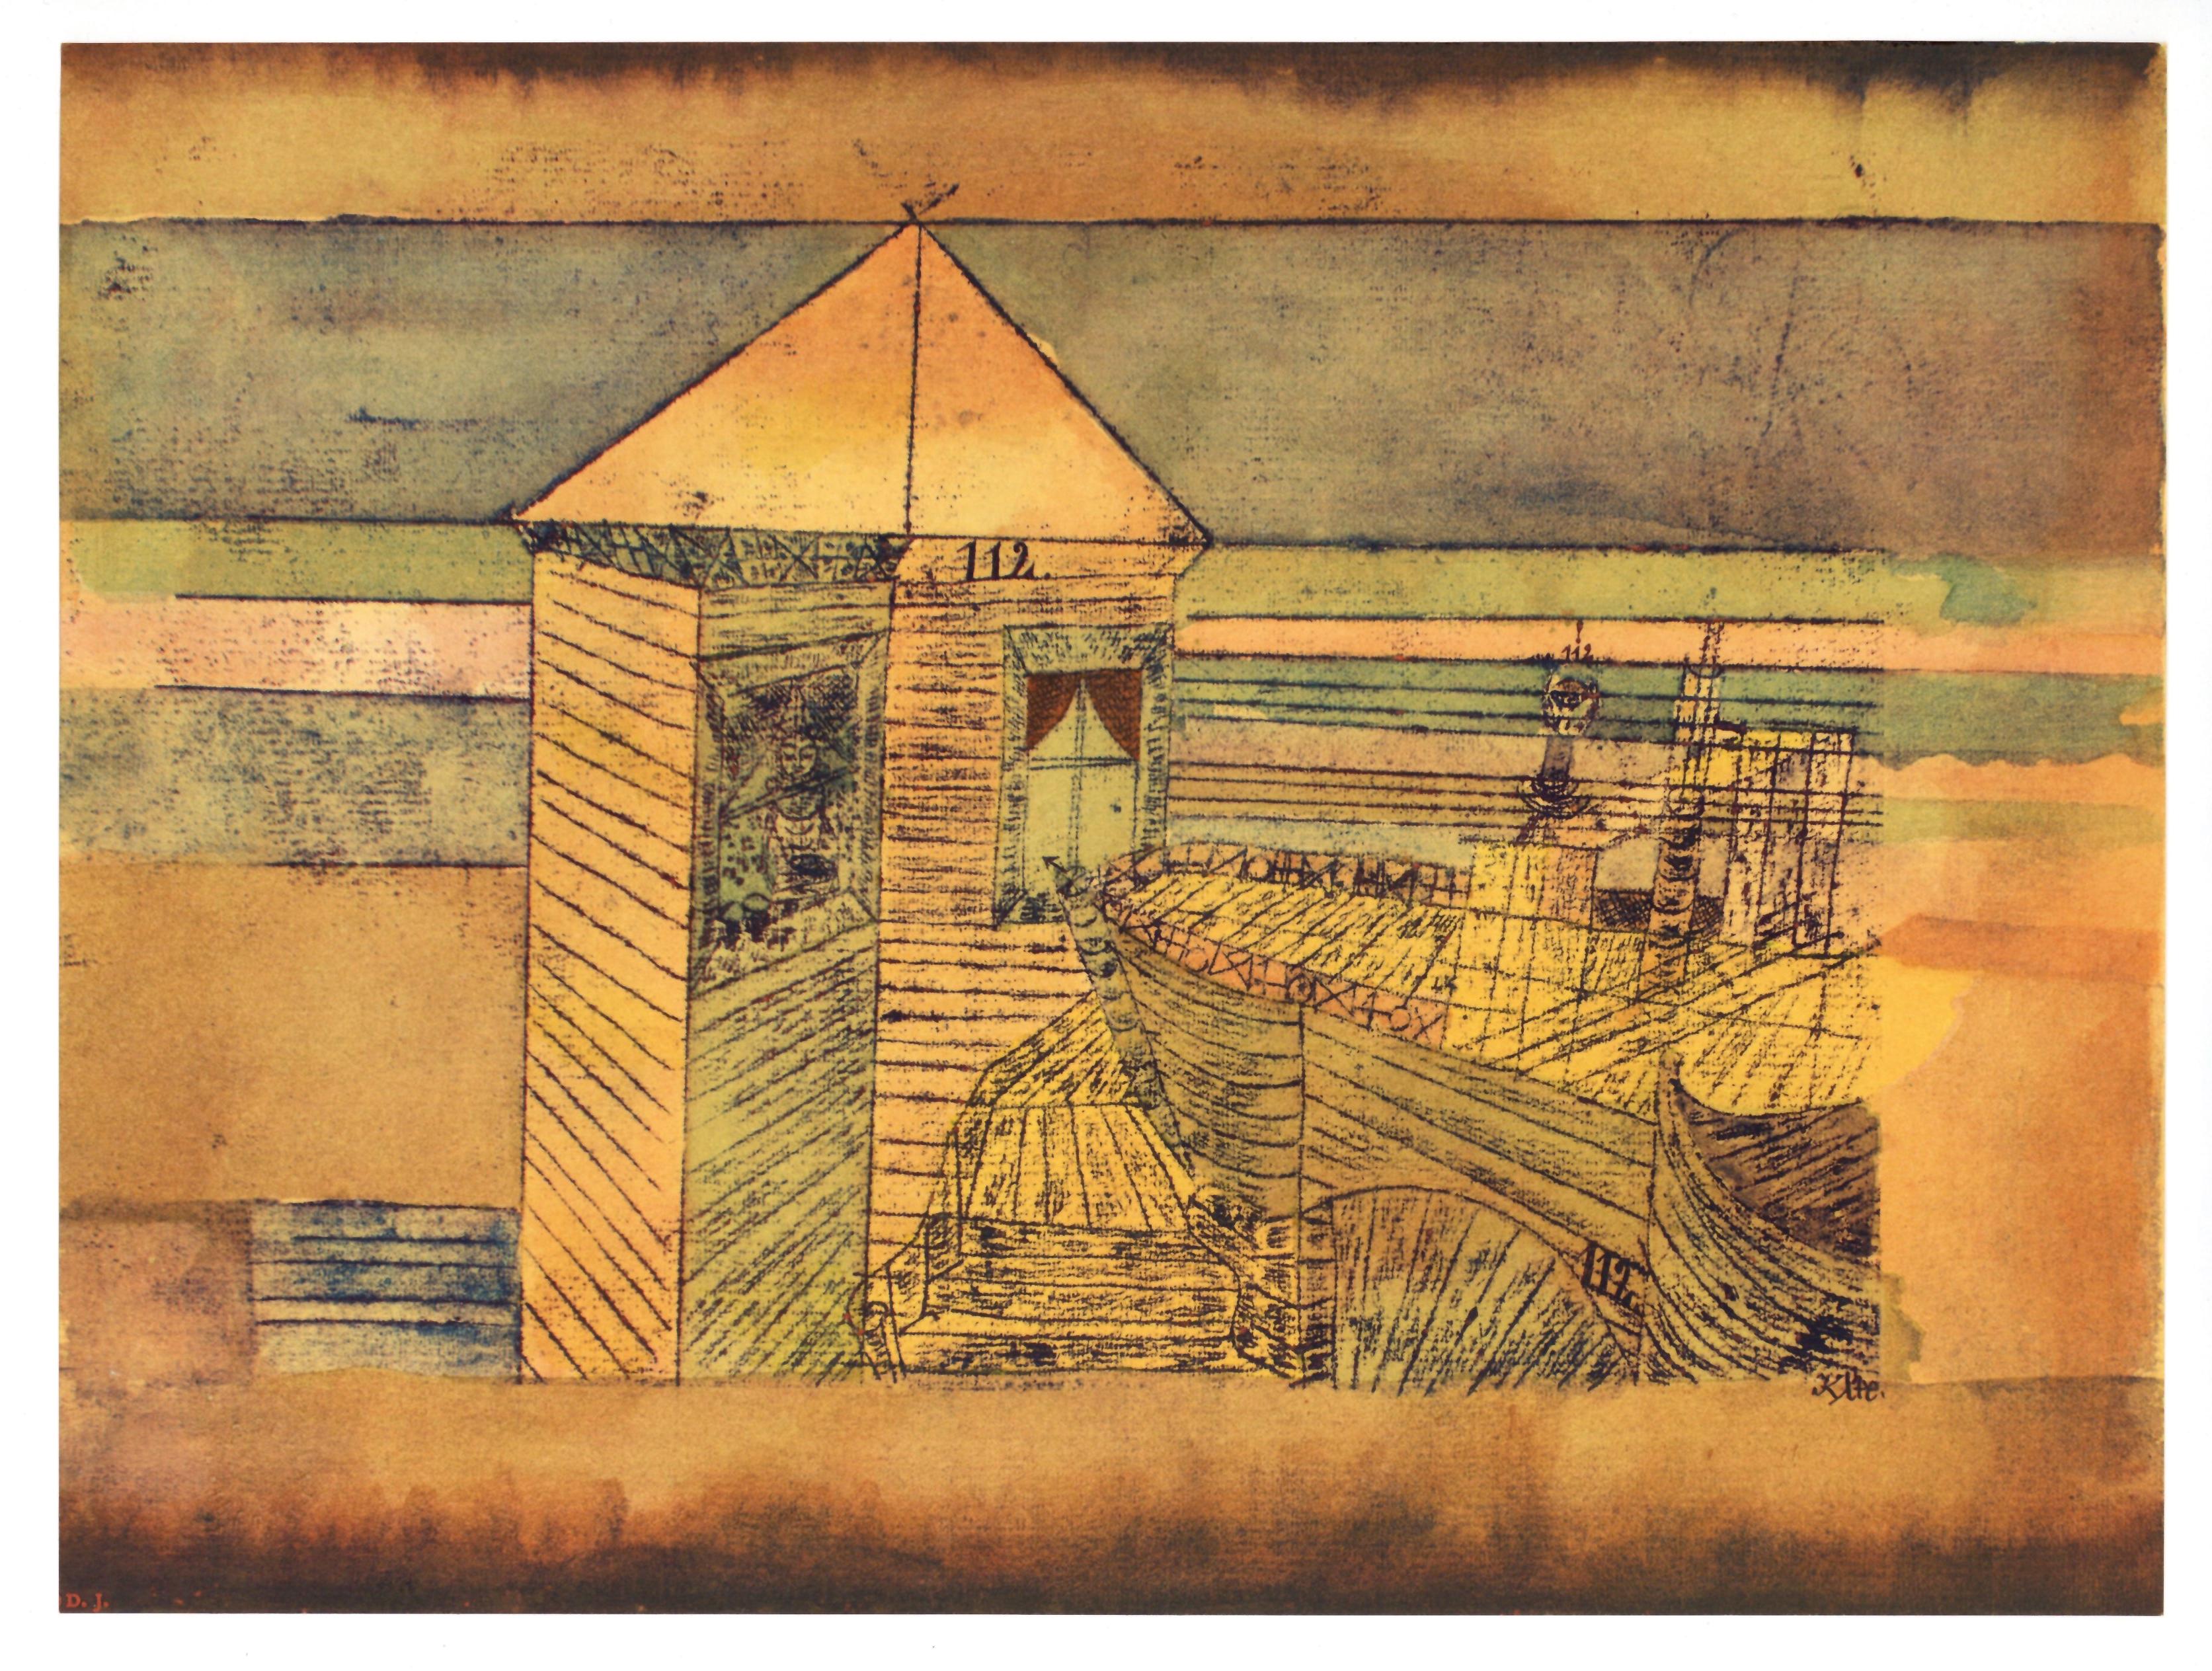 Pochoir miraculeux ou 112 - Print de (after) Paul Klee